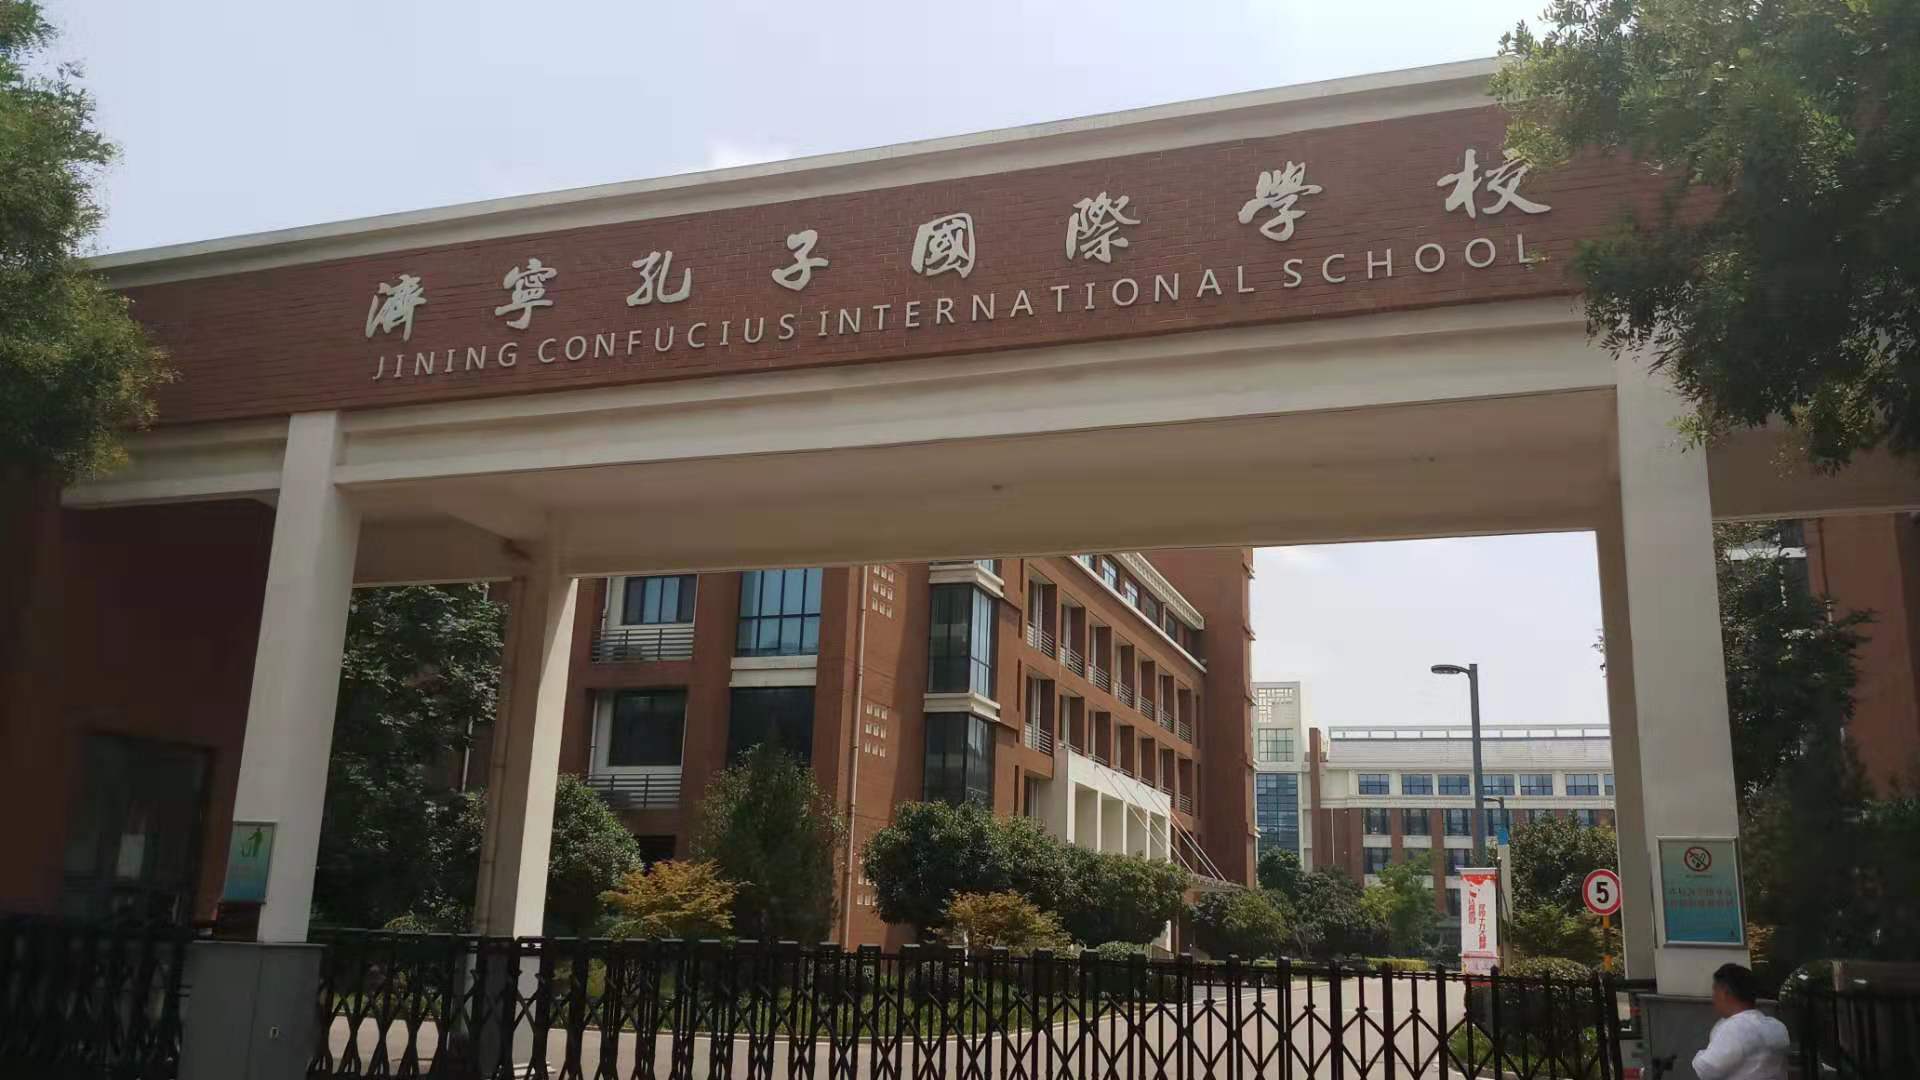 济宁孔子国际学校校徽图片